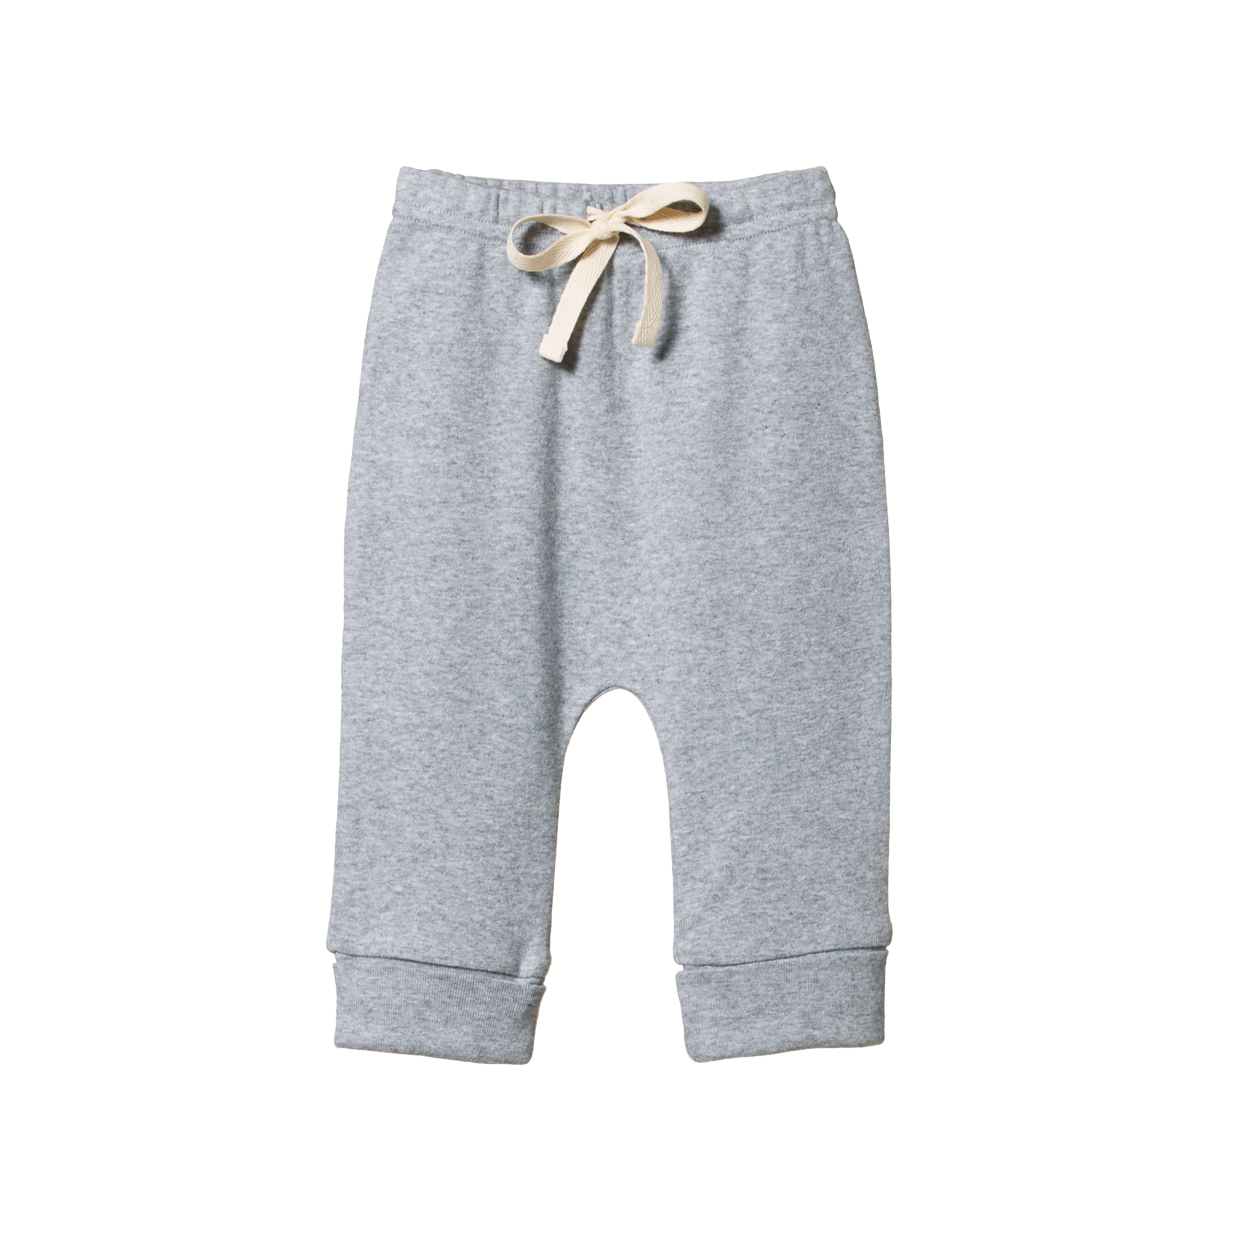 Drawstring pants - grey marle